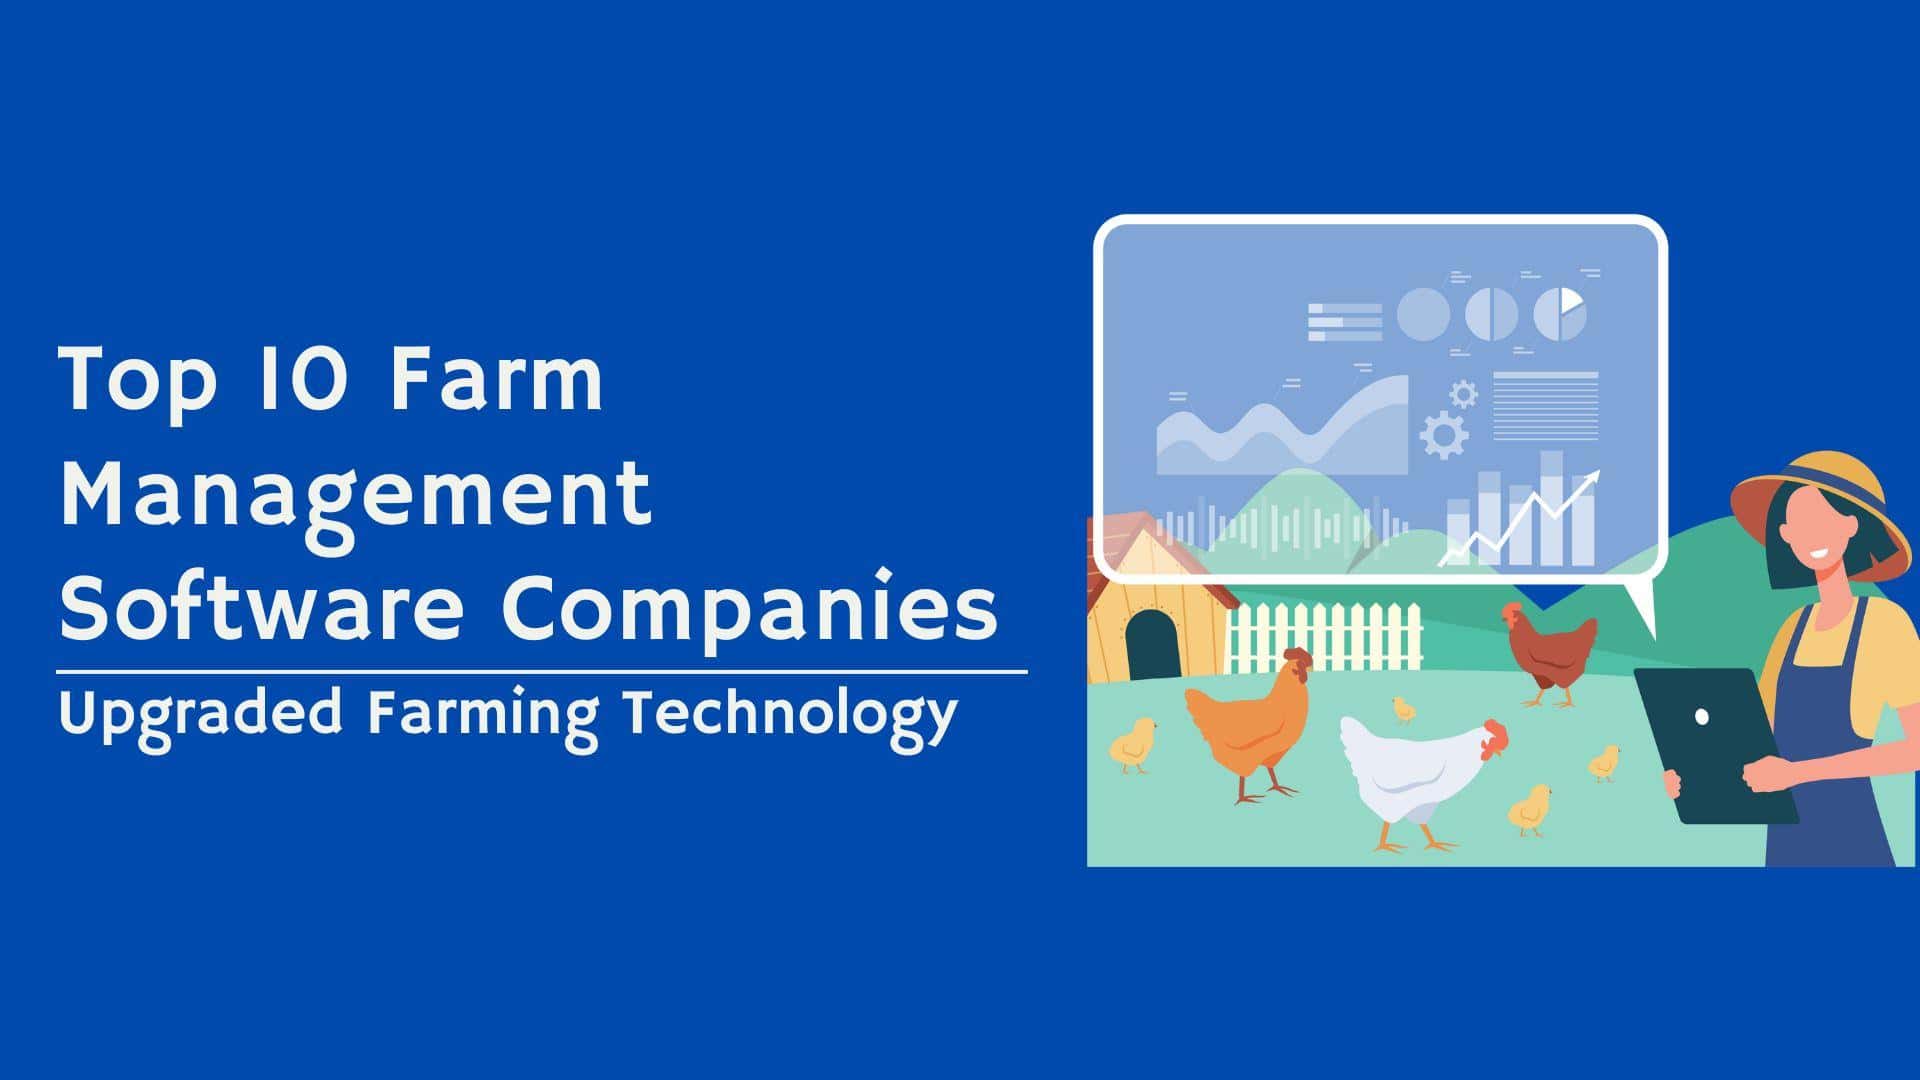  Farm Management Software Companies 